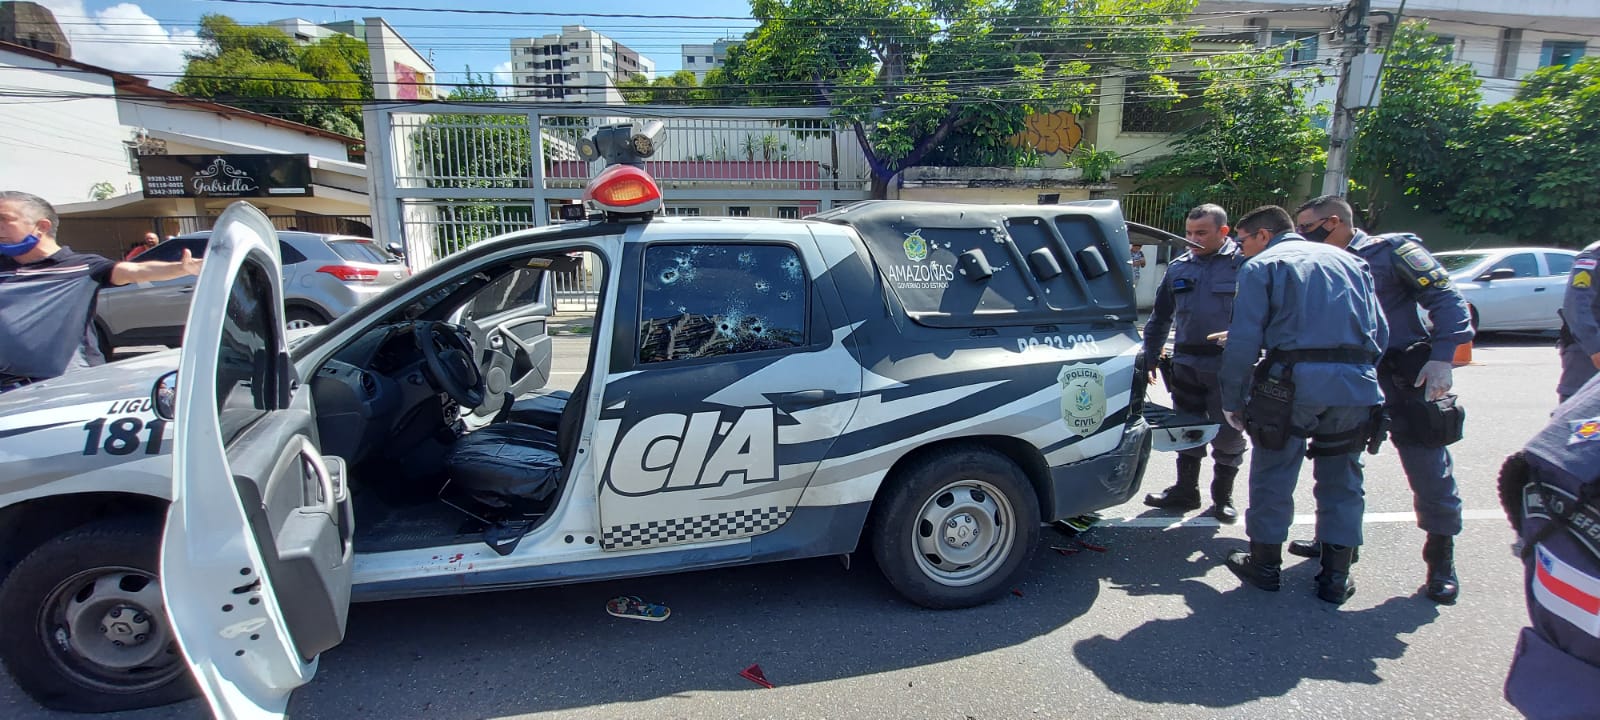 Viatura da Polícia Civil metralhada em Manaus / Foto : Divulgação